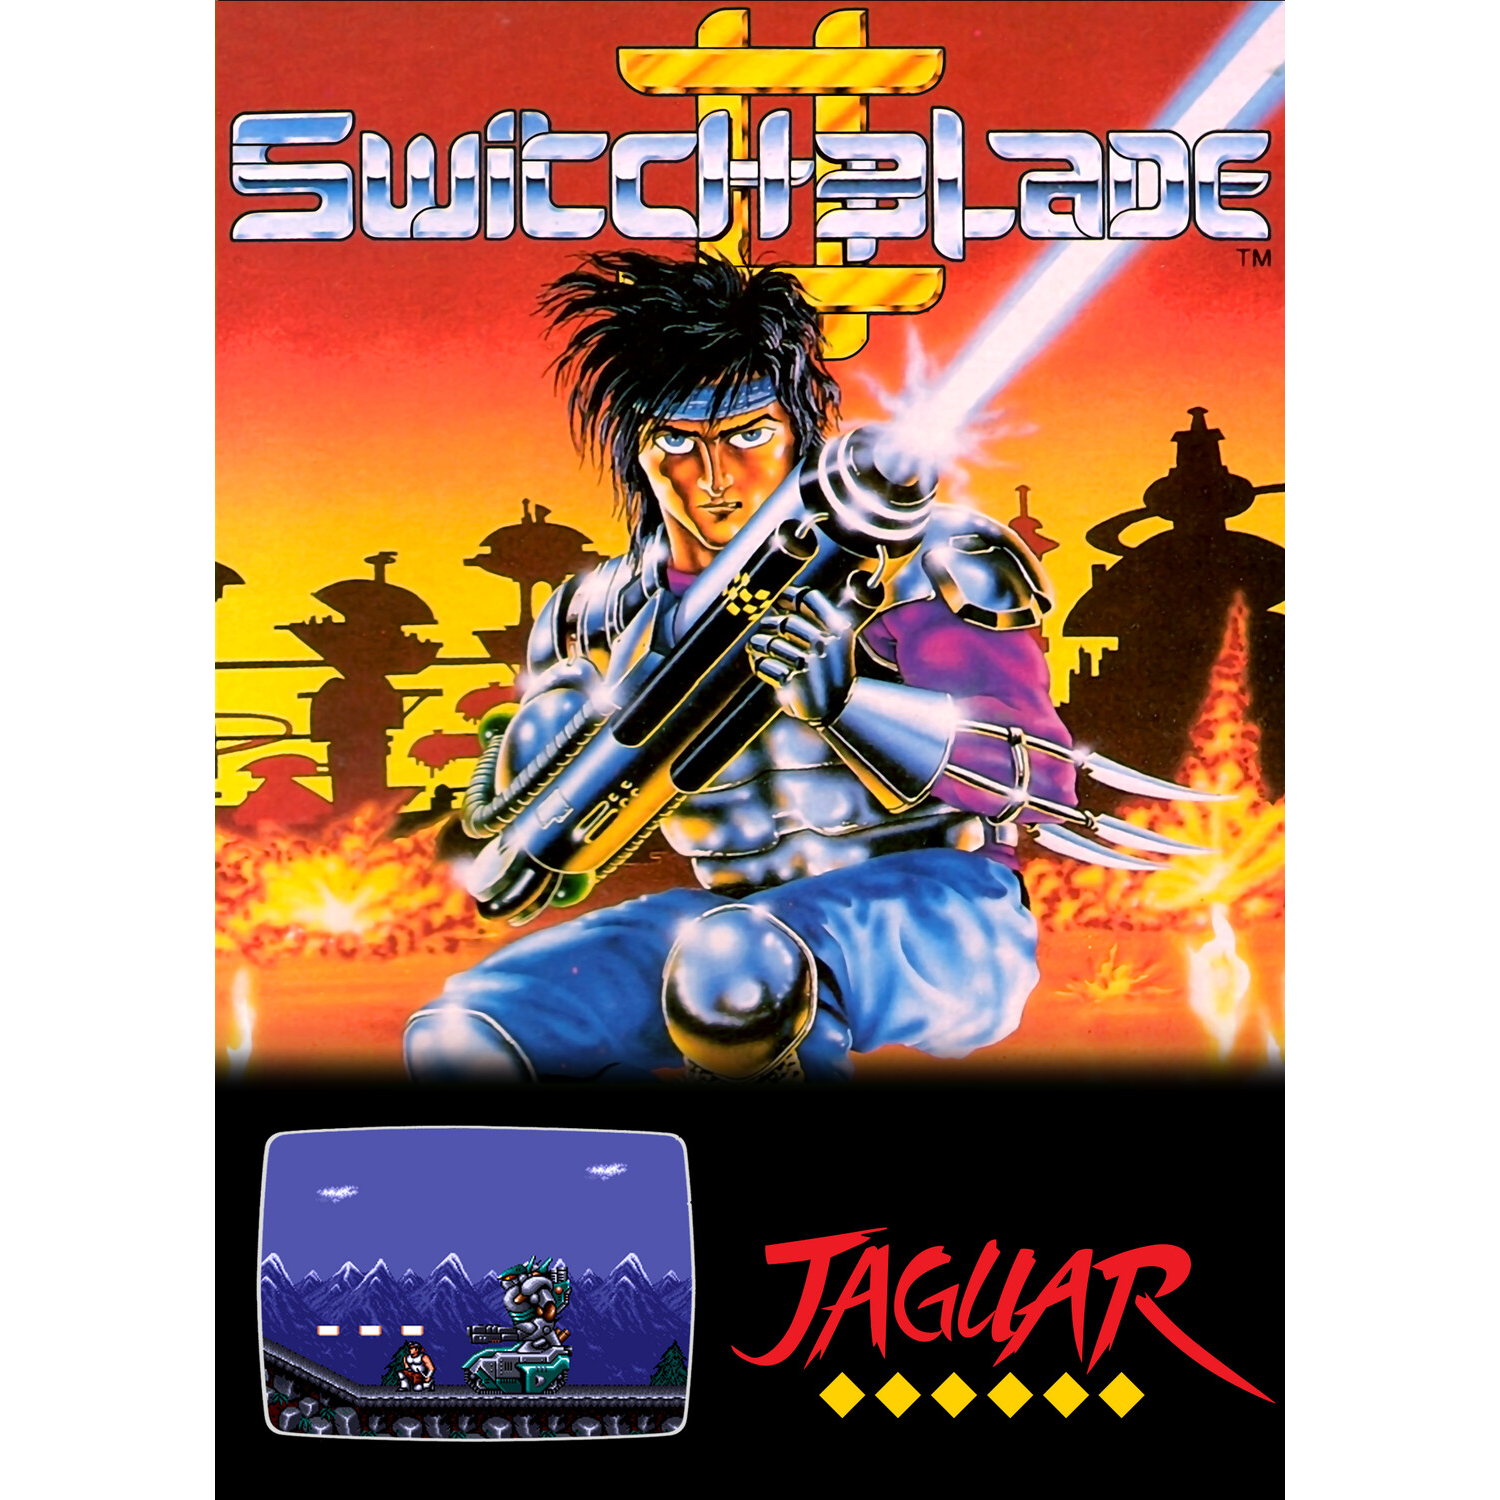 Switchblade II (Atari Jaguar)